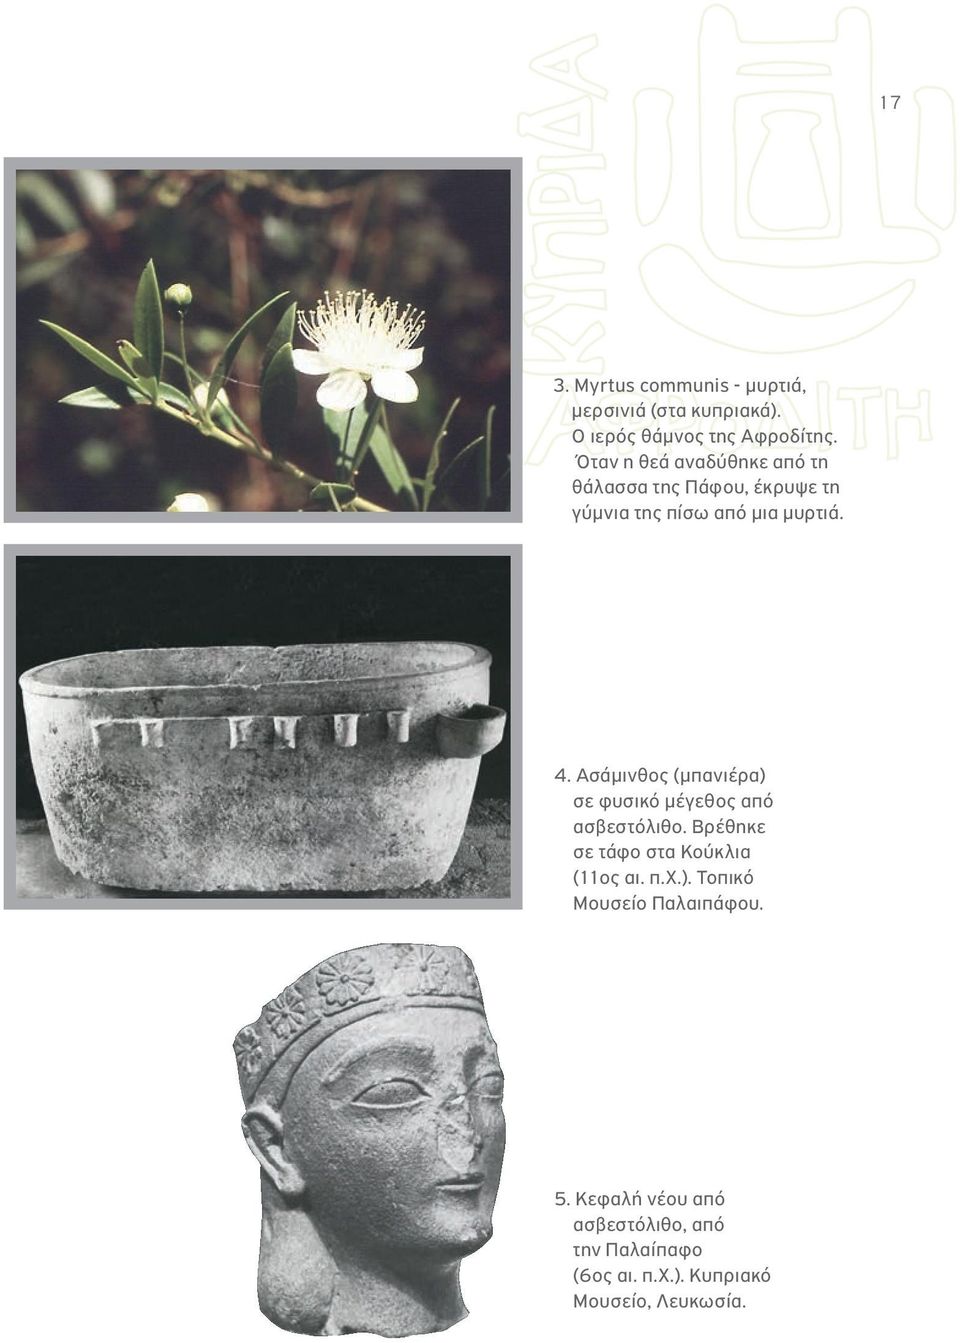 Ασάμινθος (μπανιέρα) σε φυσικό μέγεθος από ασβεστόλιθο. Βρέθηκε σε τάφο στα Κούκλια (11ος αι. π.χ.). Τοπικό Μουσείο Παλαιπάφου.